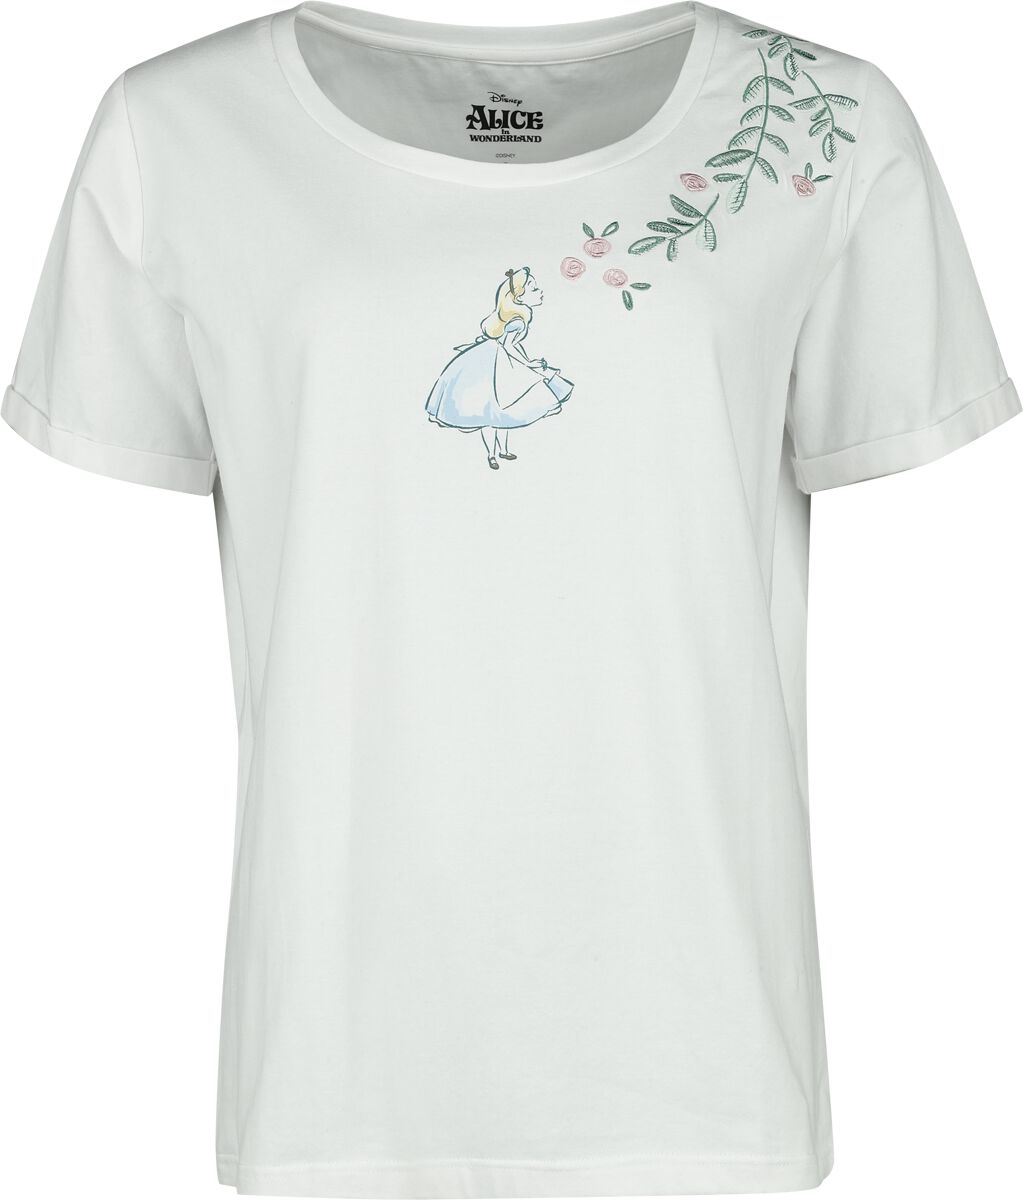 Alice im Wunderland - Disney T-Shirt - Alice With Roses - S bis XXL - für Damen - Größe S - weiß  - EMP exklusives Merchandise!